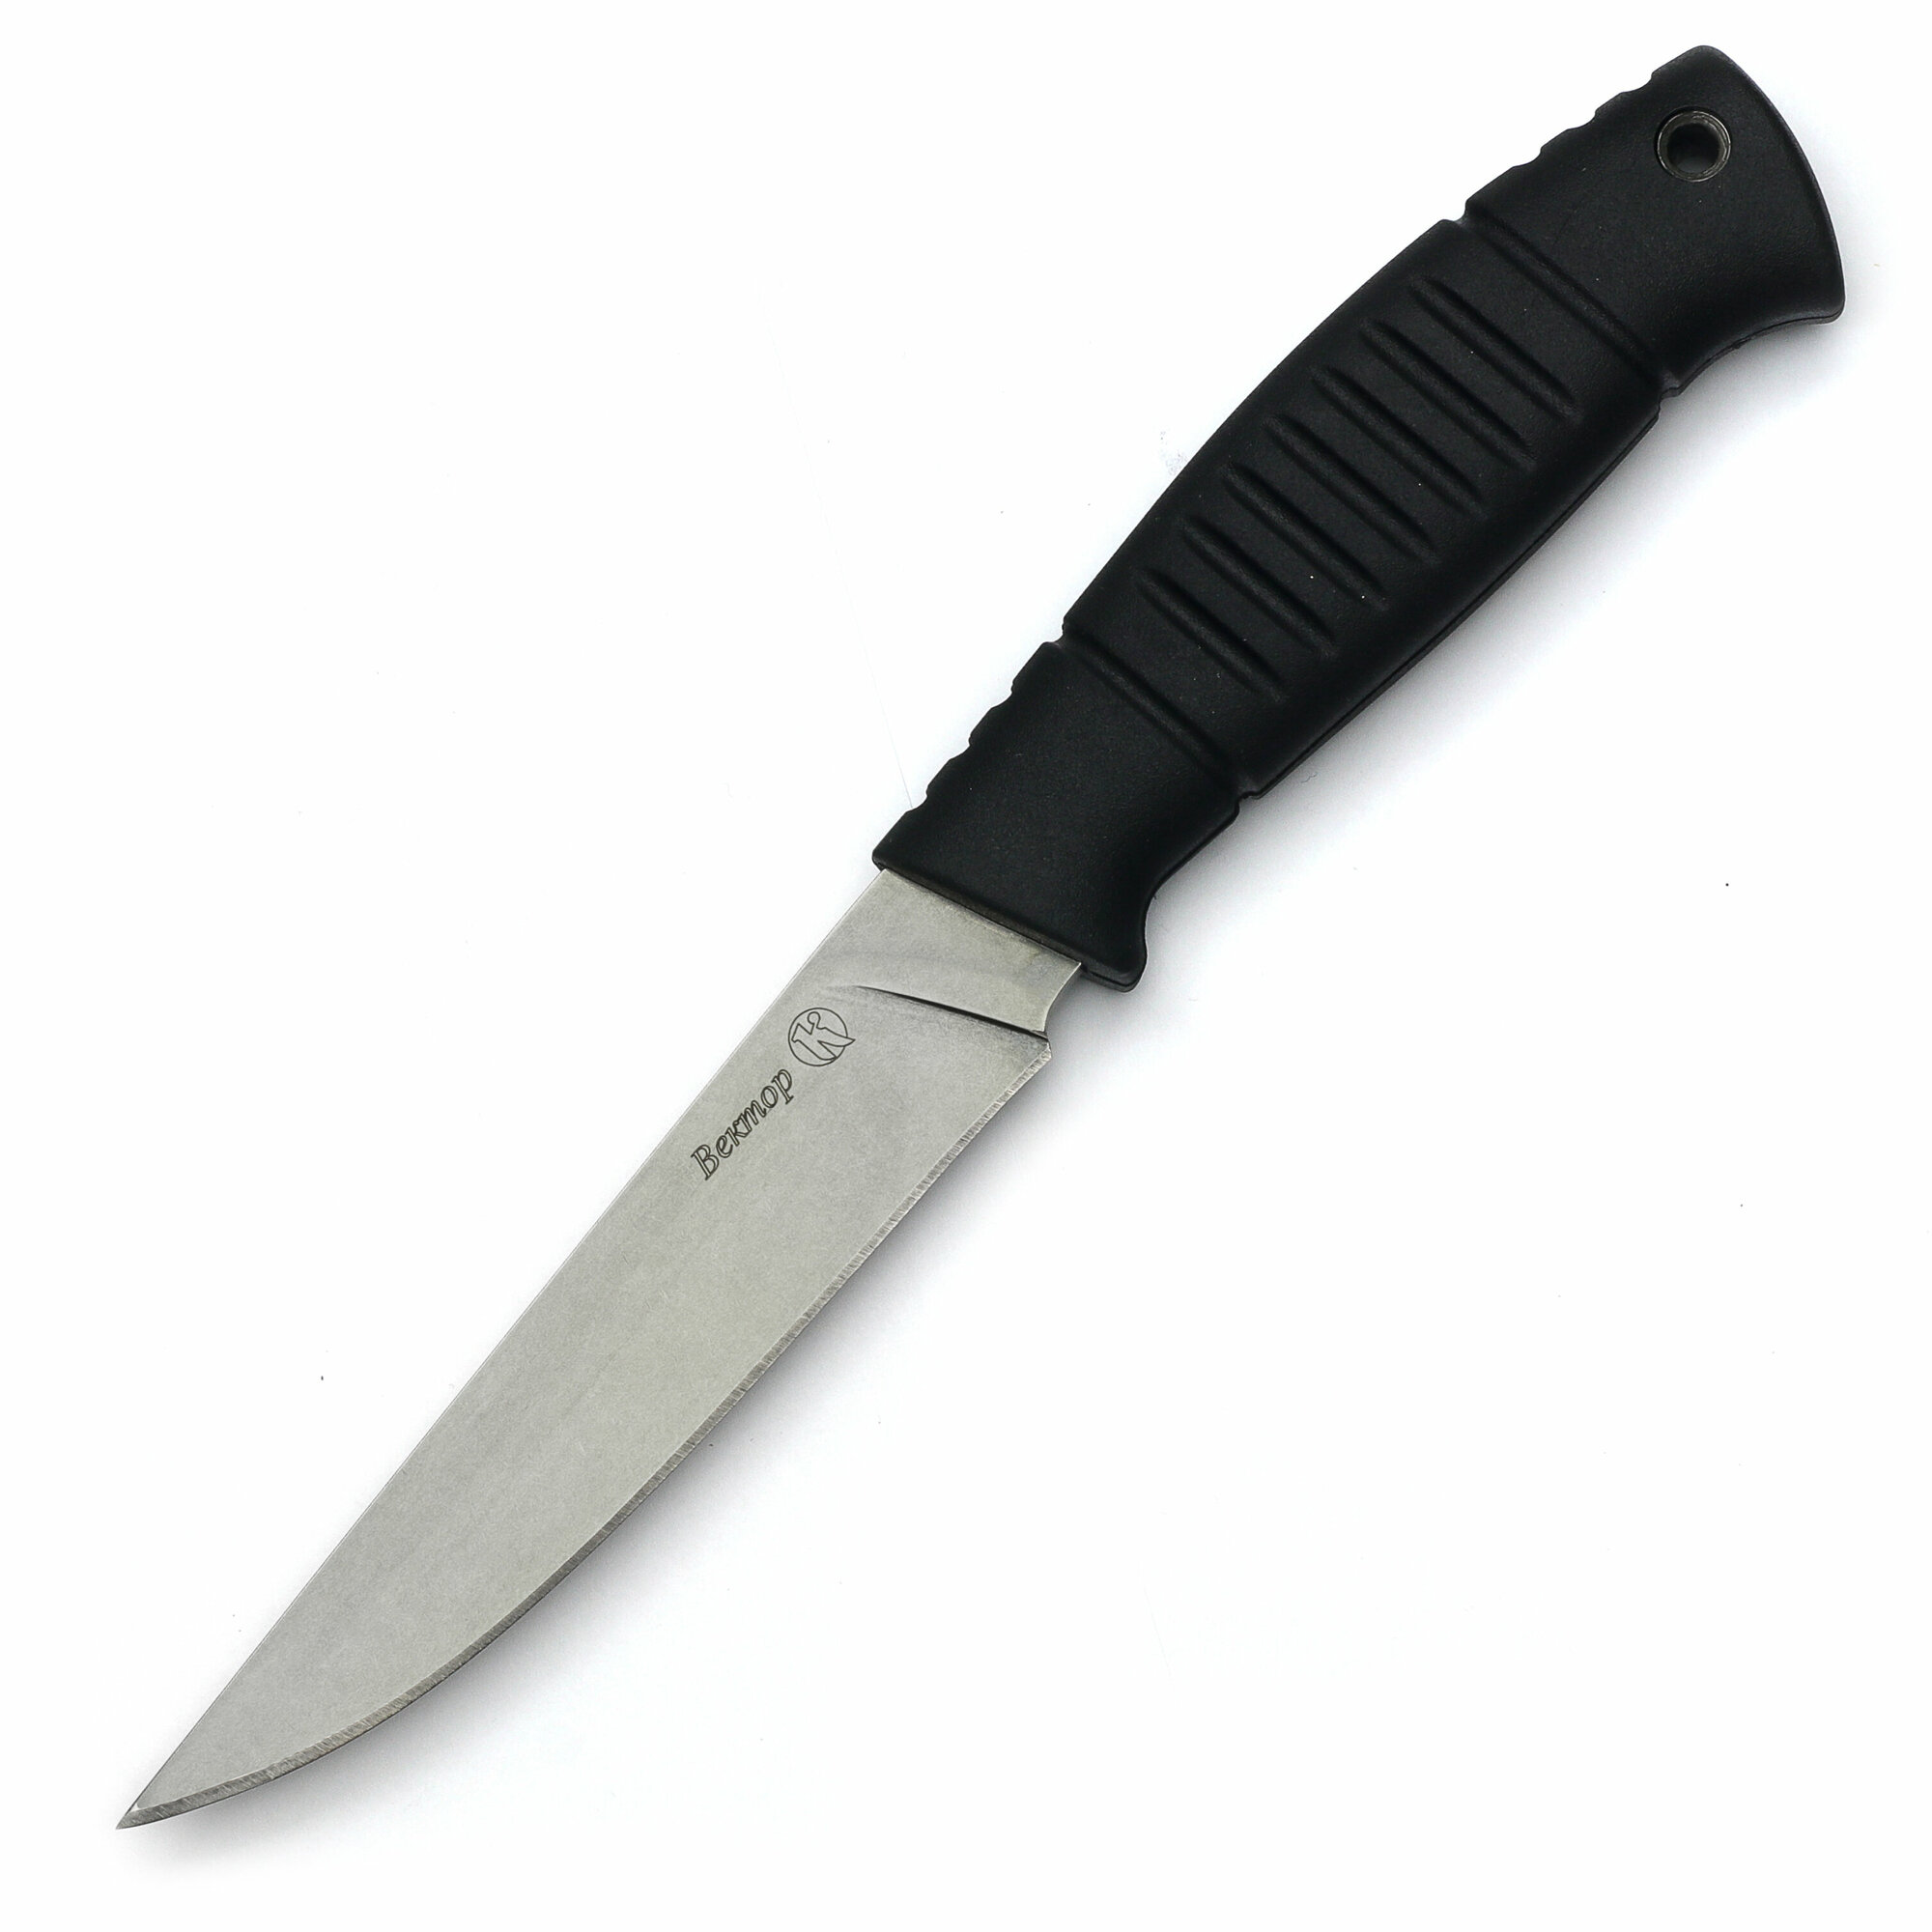 Нож от ООО ПП Кизляр "Вектор" Ч/Б сталь AUS-8, рукоять эластрон